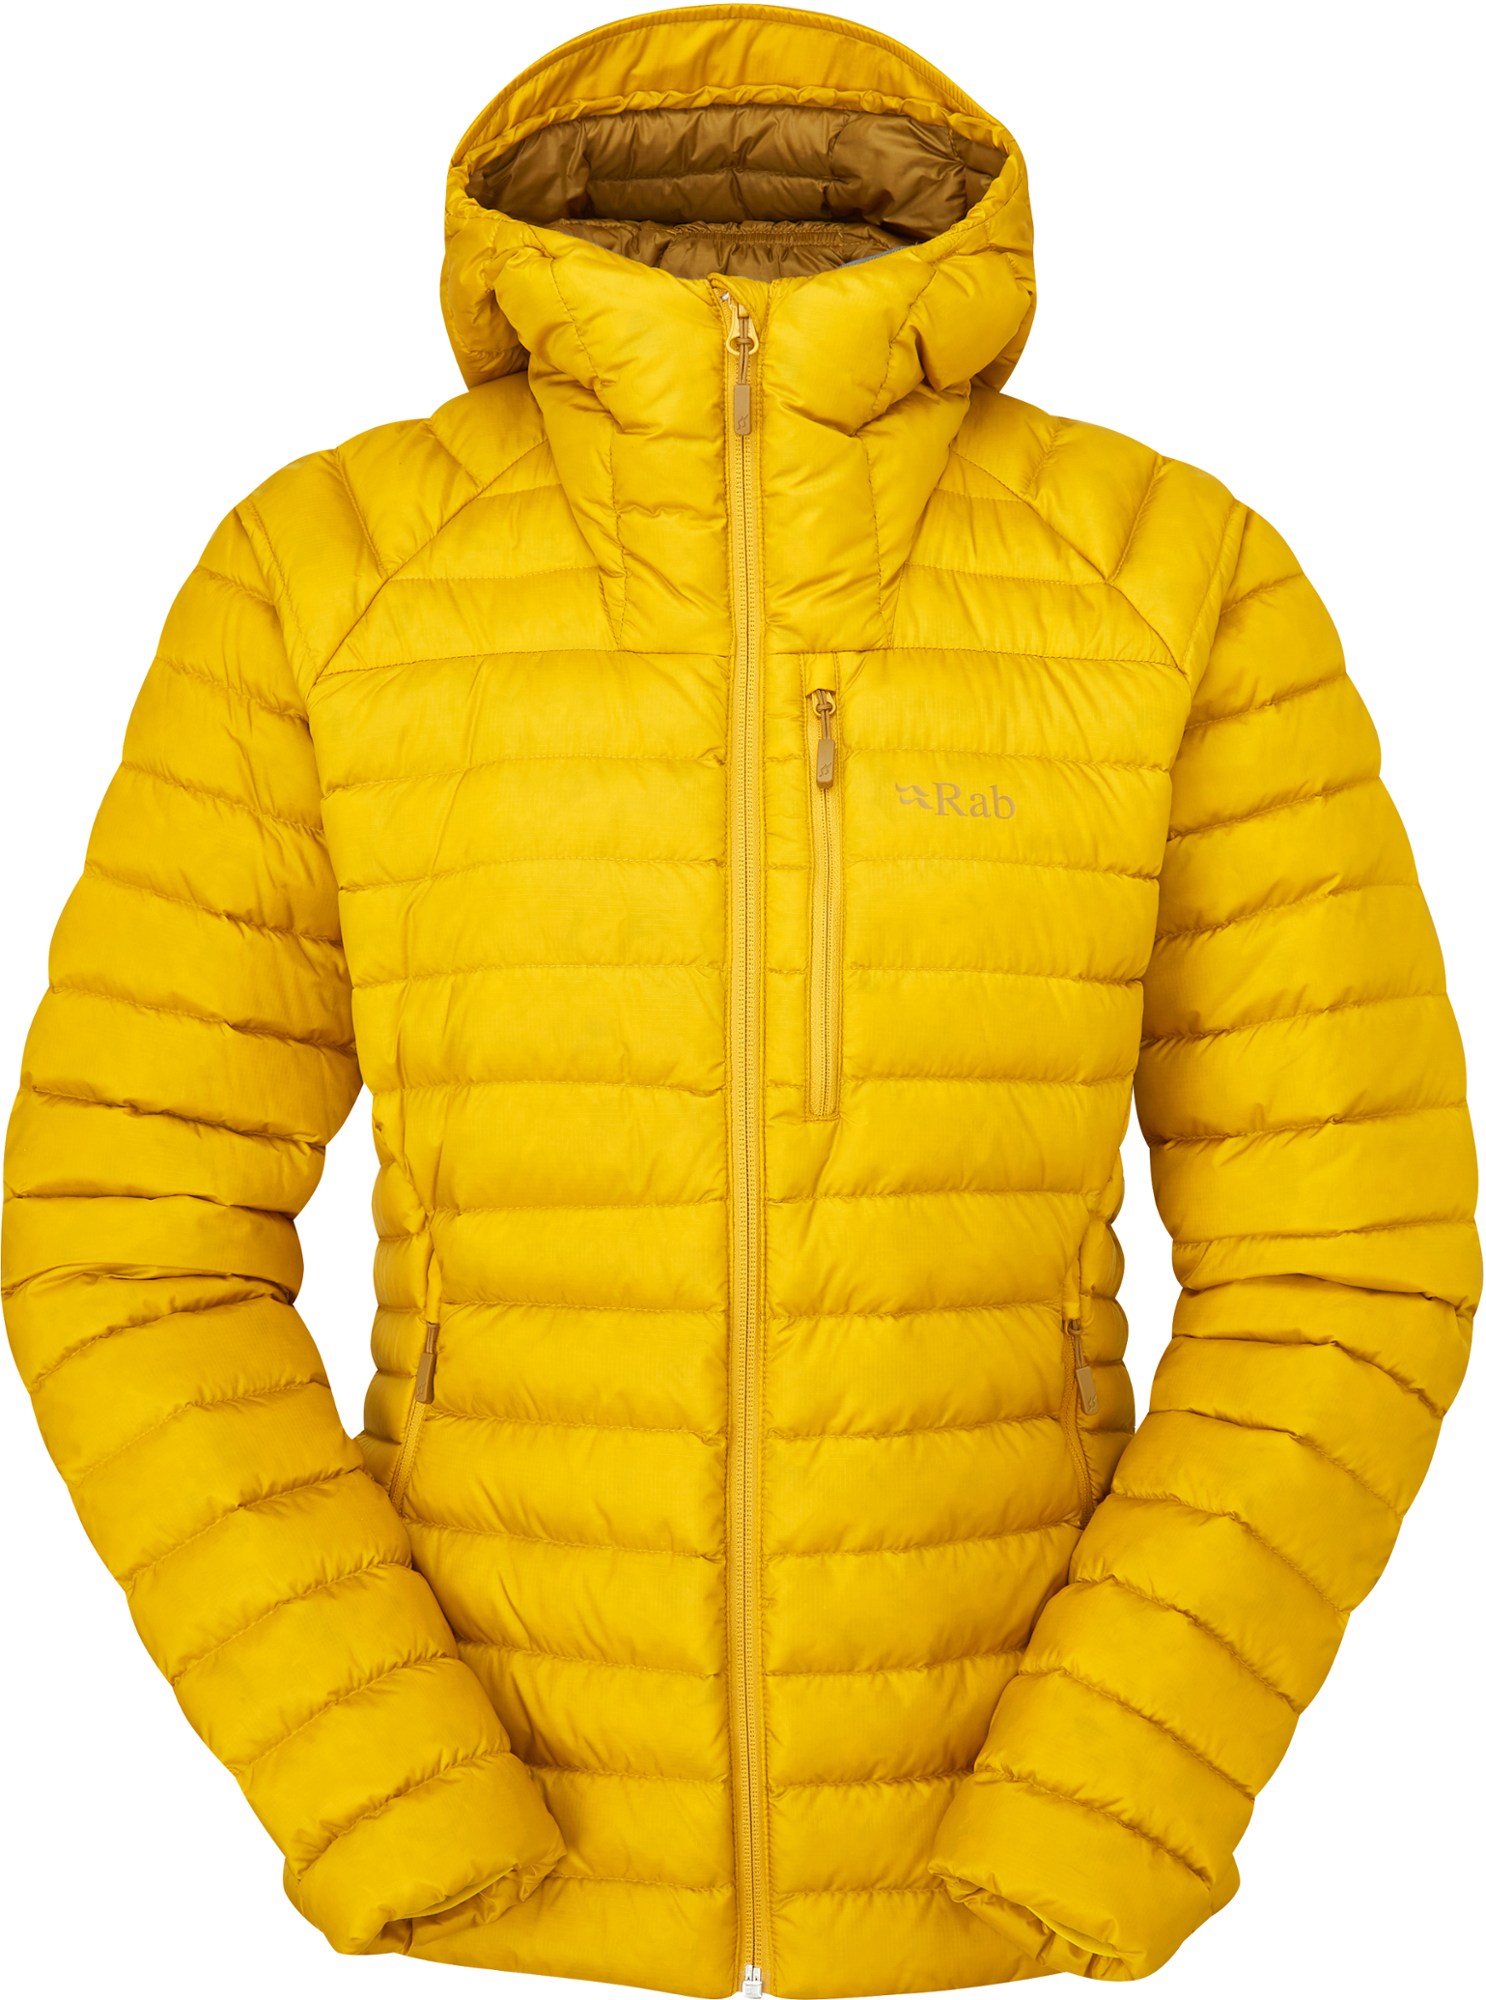 Куртка-пуховик Microlight Alpine — женская Rab, желтый